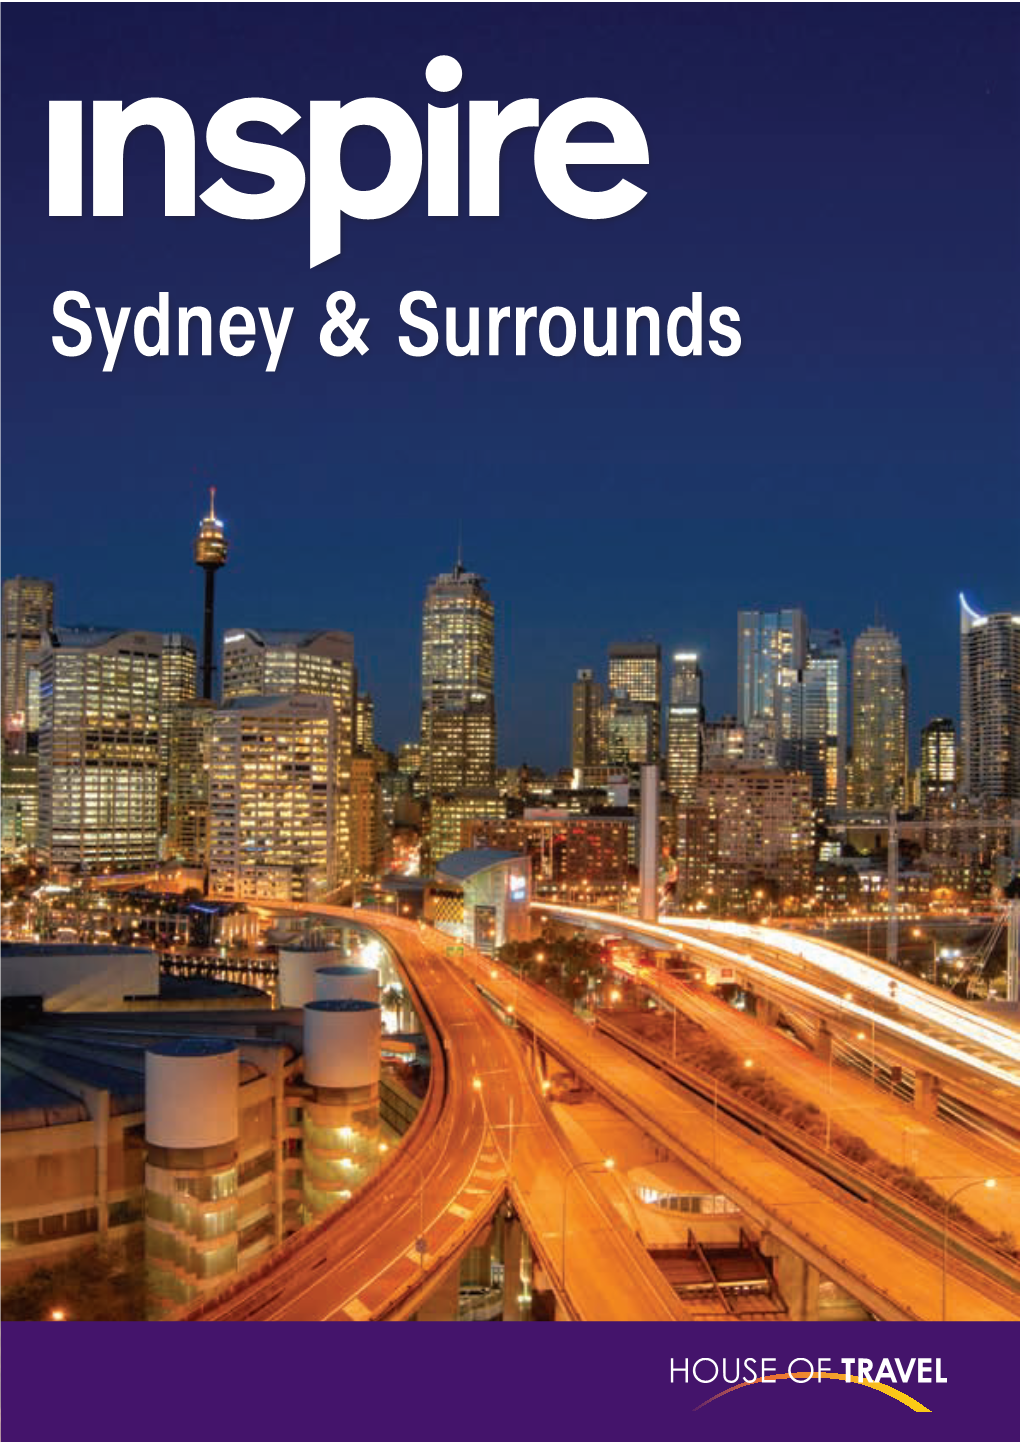 Sydney & Surrounds